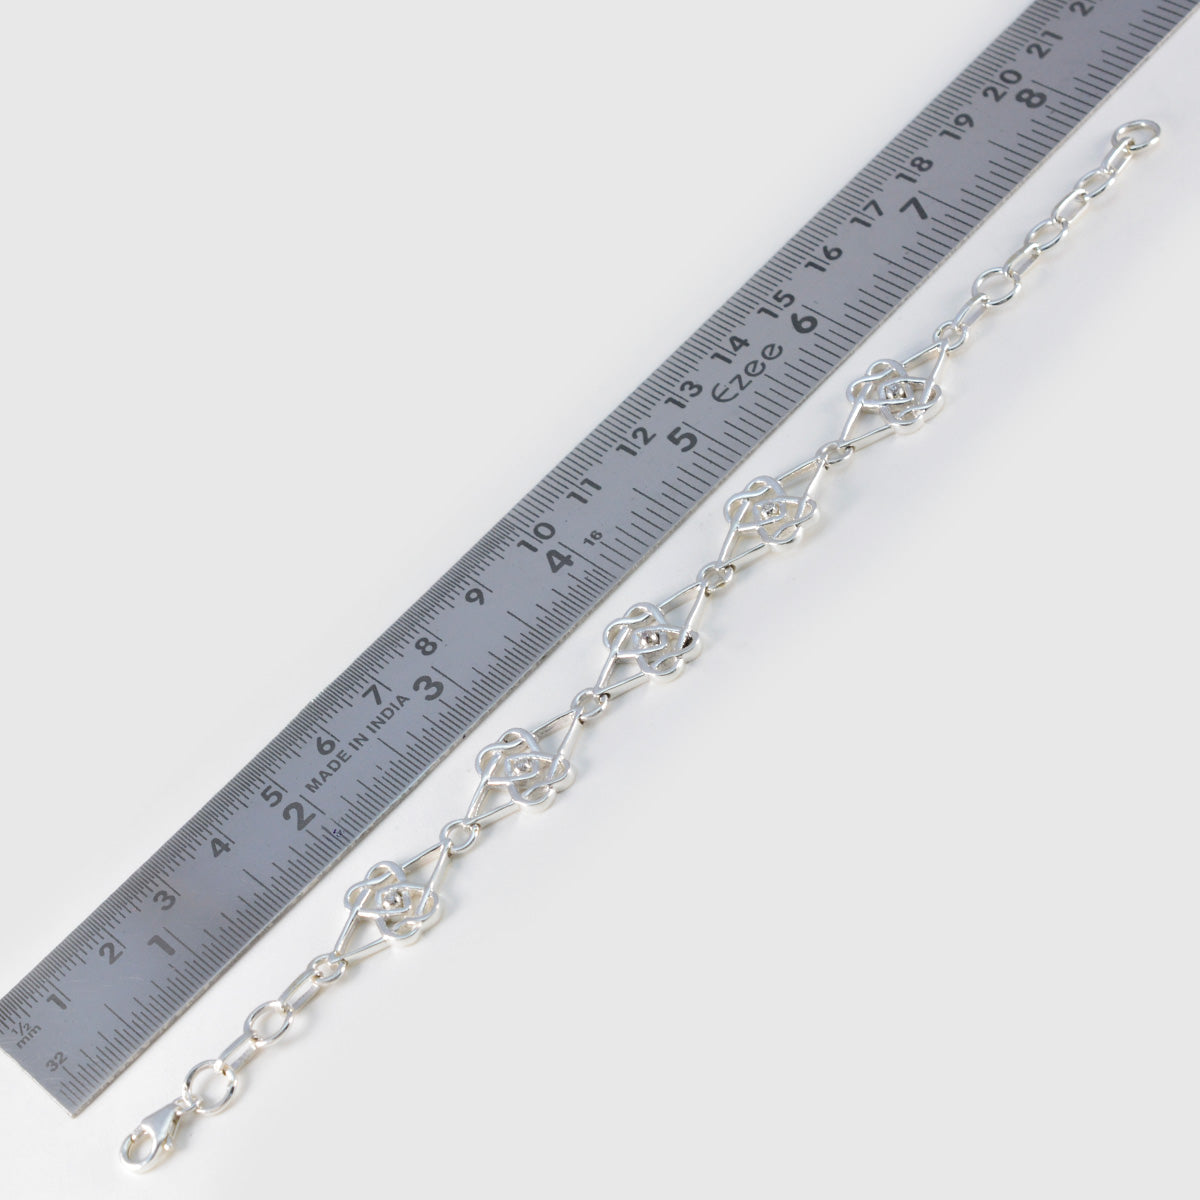 riyo в количестве 925 пробы серебряный браслет для женщин белый браслет с цирконием безель браслет с рыбным крючком браслет размер l 6-8,5 дюймов.